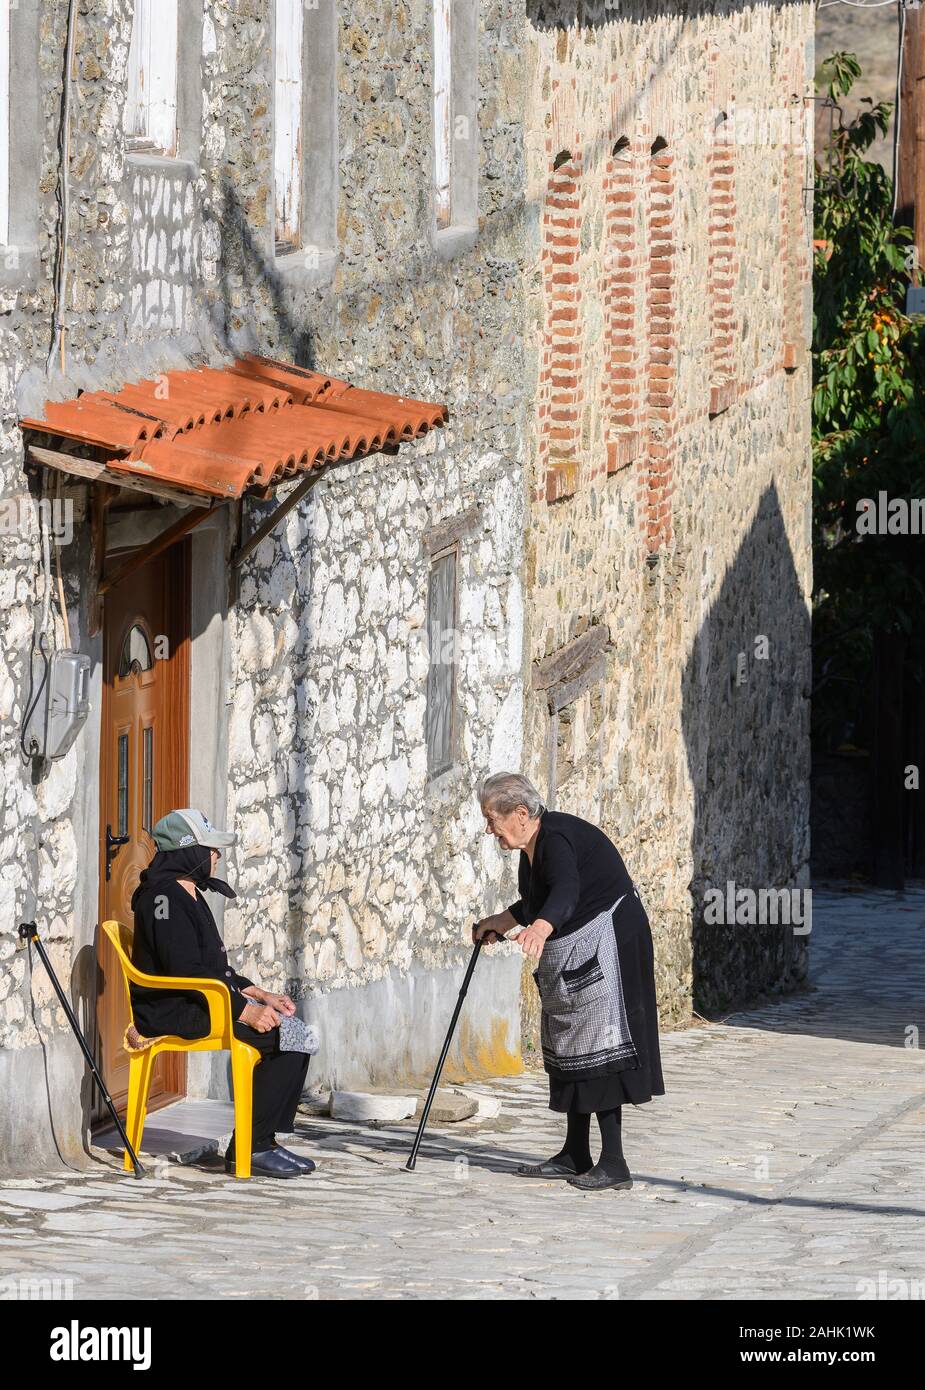 Le persone anziane nel piccolo villaggio di Agios Ghermanos vicino al lago Prespa nel comune di Prespes, Macedonia, Grecia settentrionale. Foto Stock